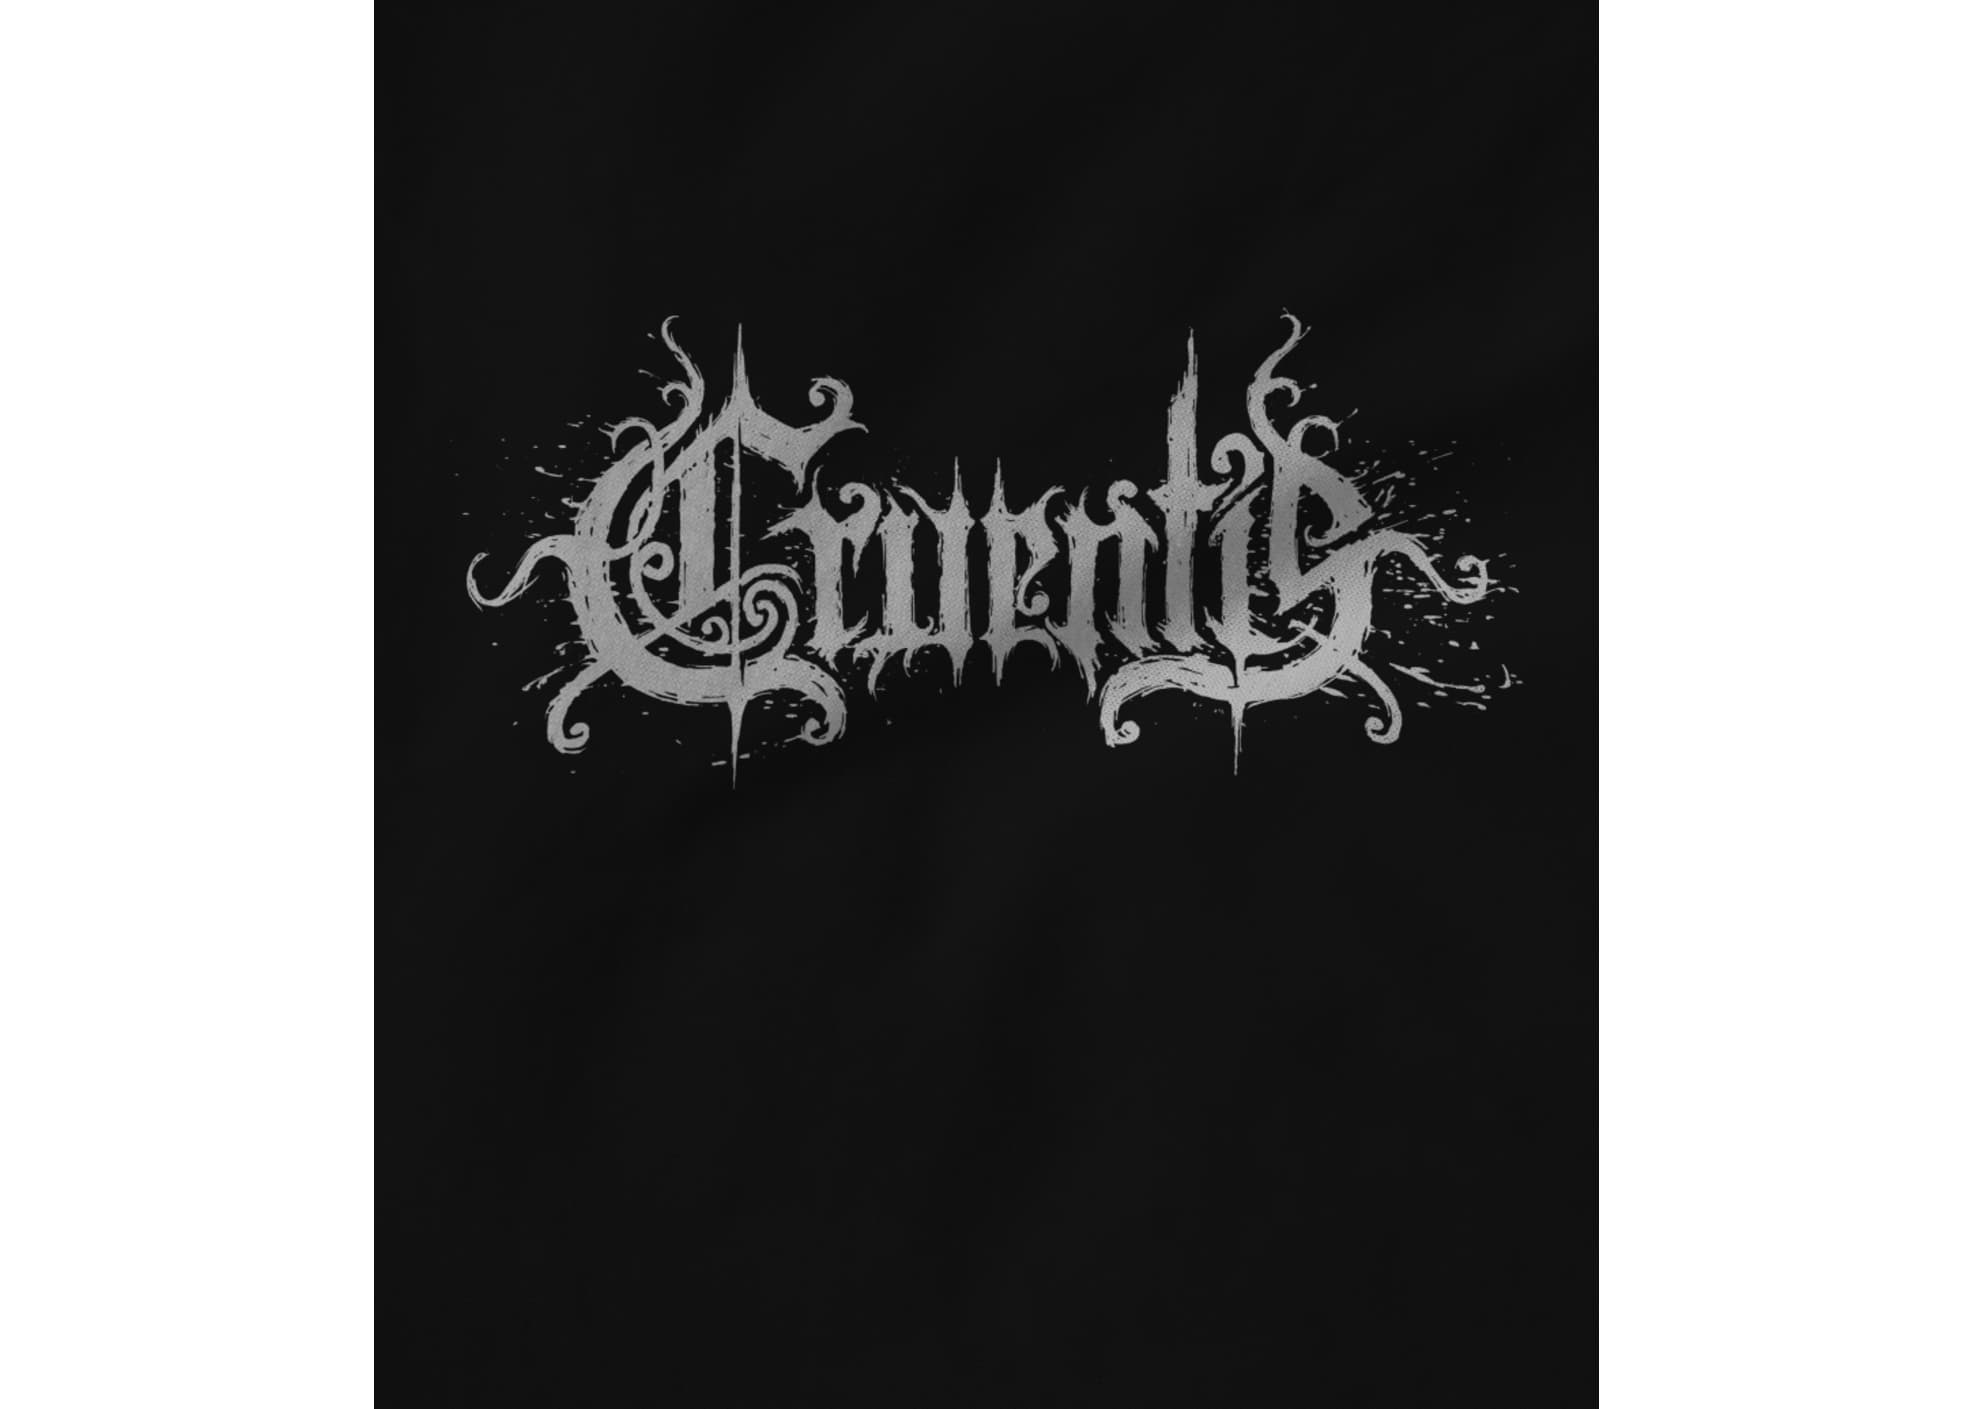 Cruentis cruentis logo 1623098819